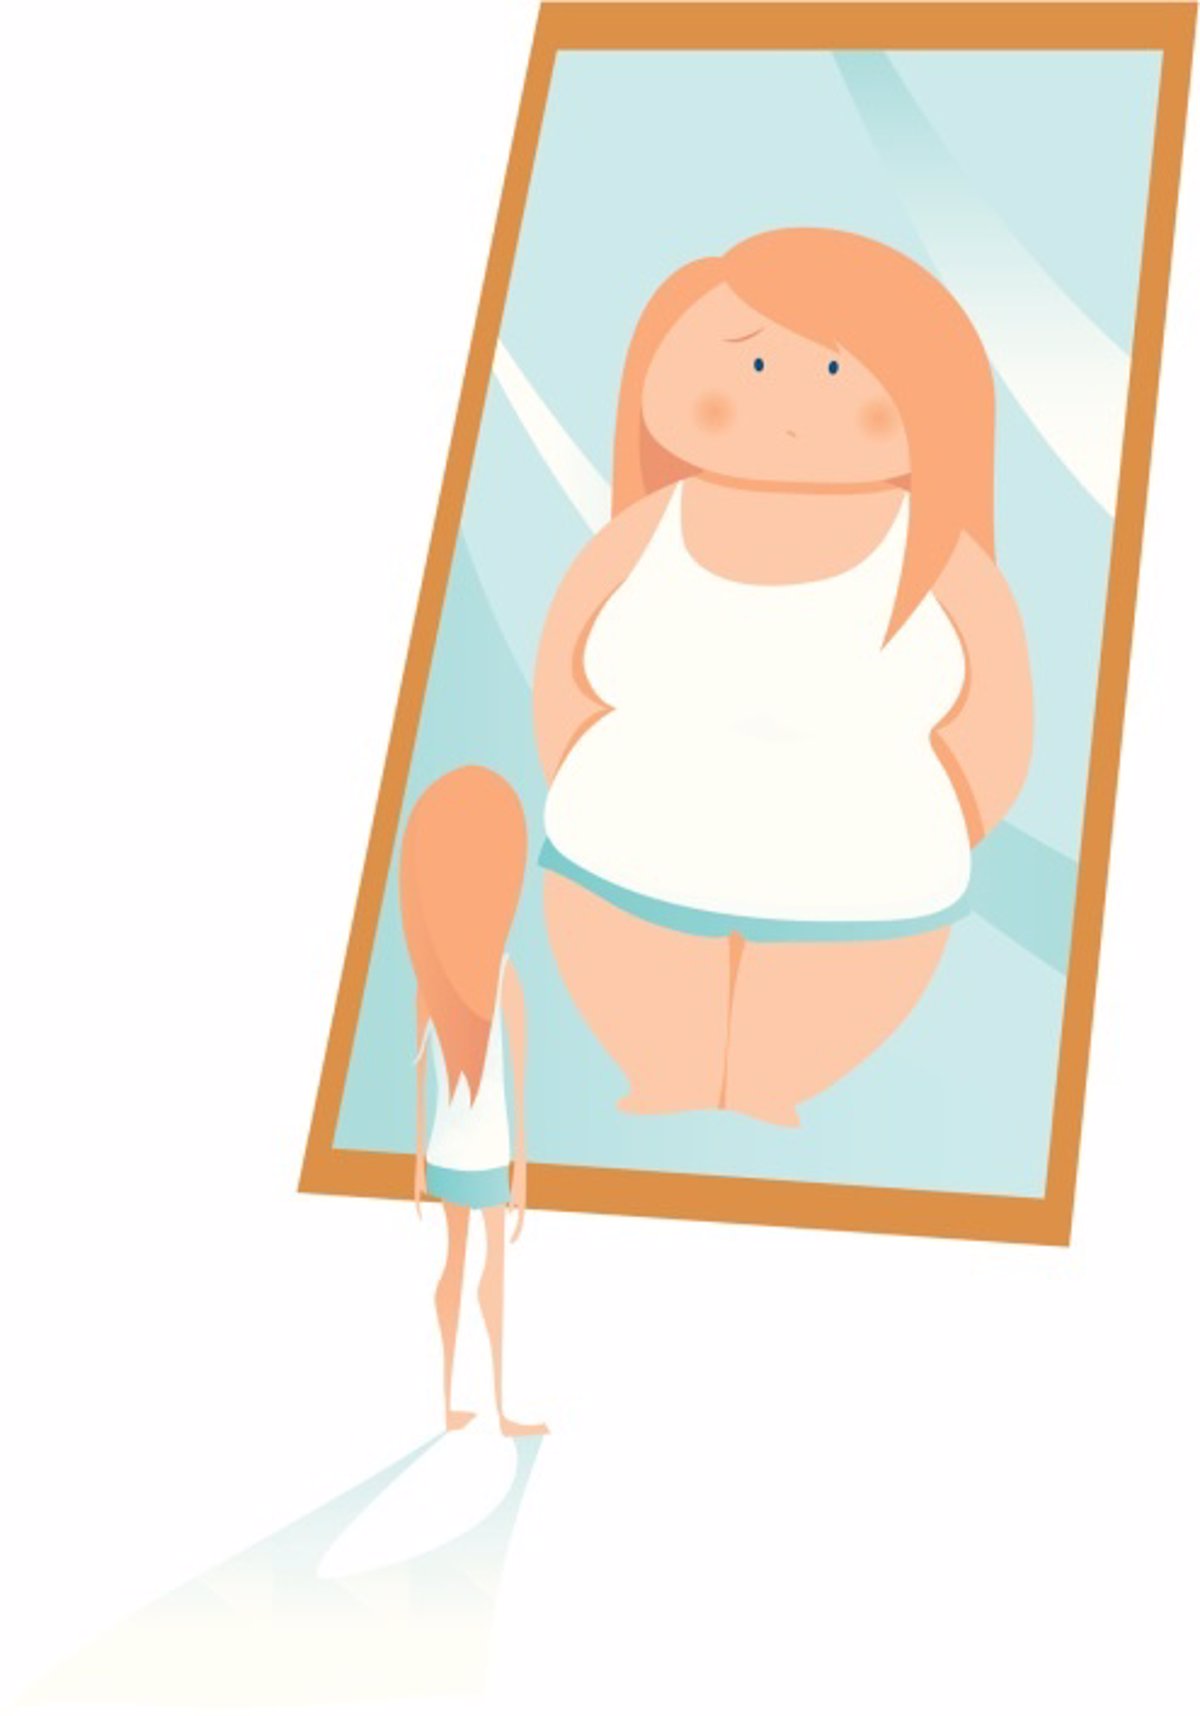 Trastornos de la alimentación: ¿Cómo identificarlos en los adolescentes?